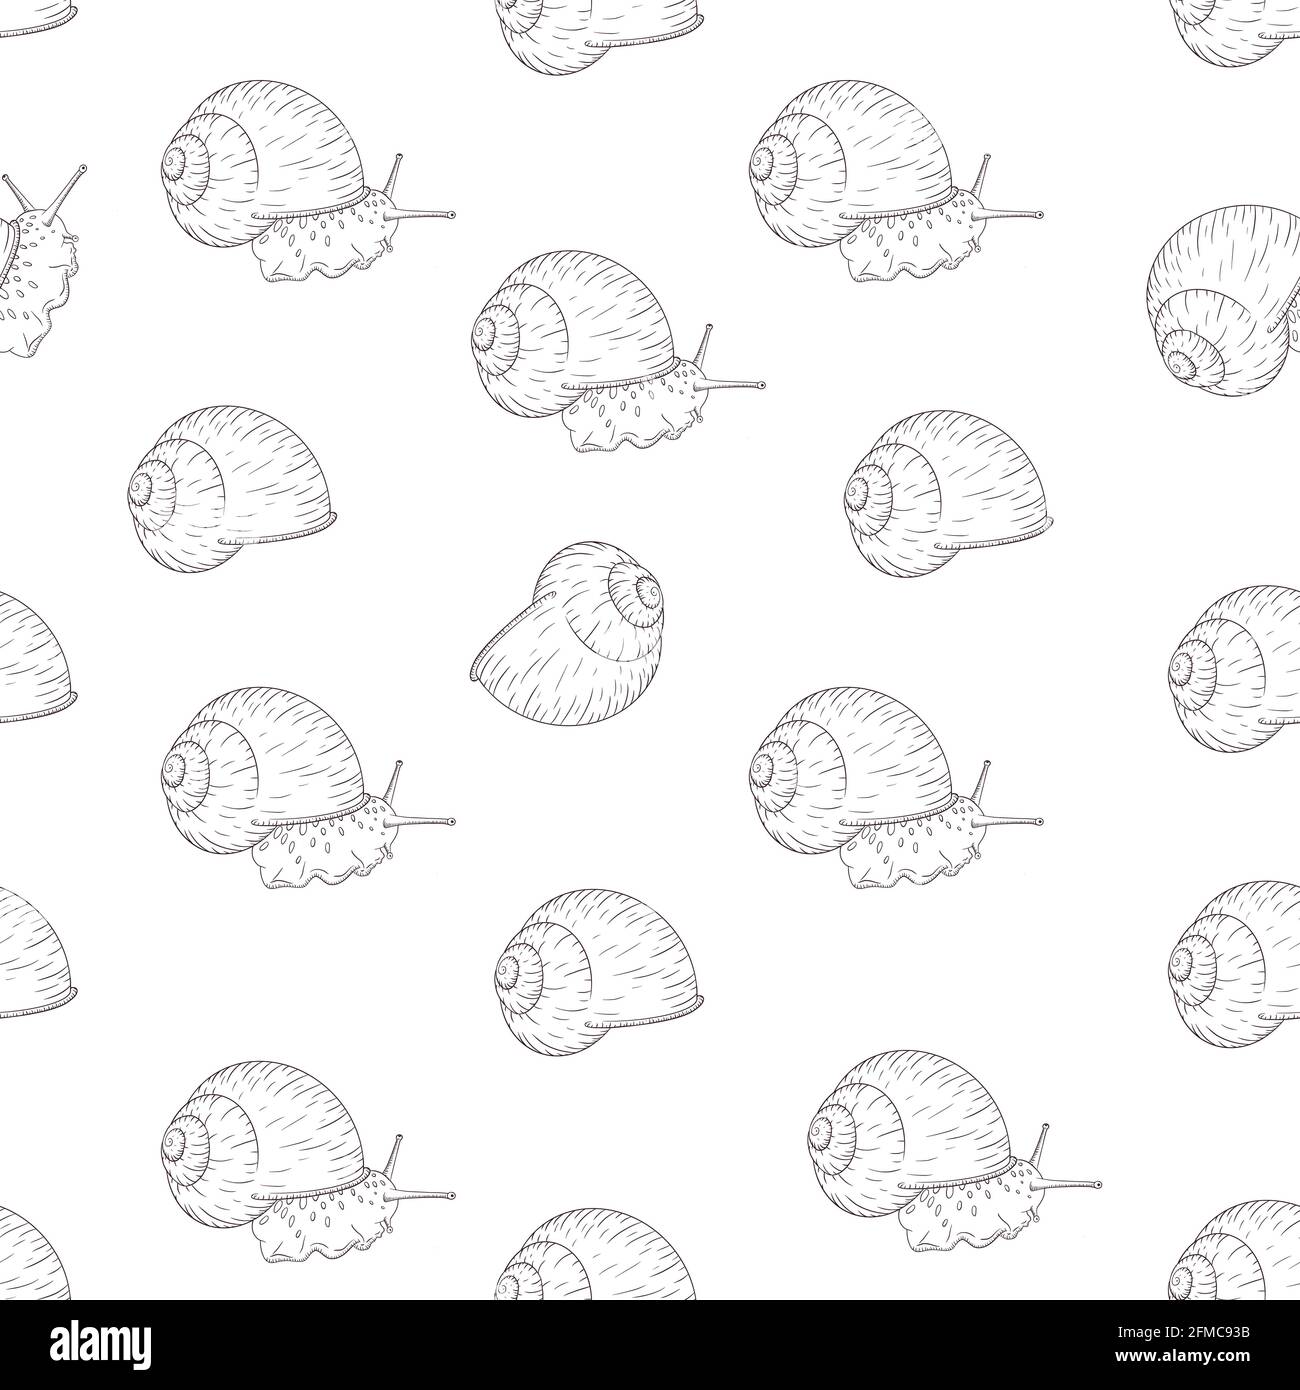 Traubencochlea mit schwarz-weißem Skizzenmuster. Gravierte Weichtiere zum Einwickeln von Papier, Hintergrund, Textil und Stoff Stock Vektor